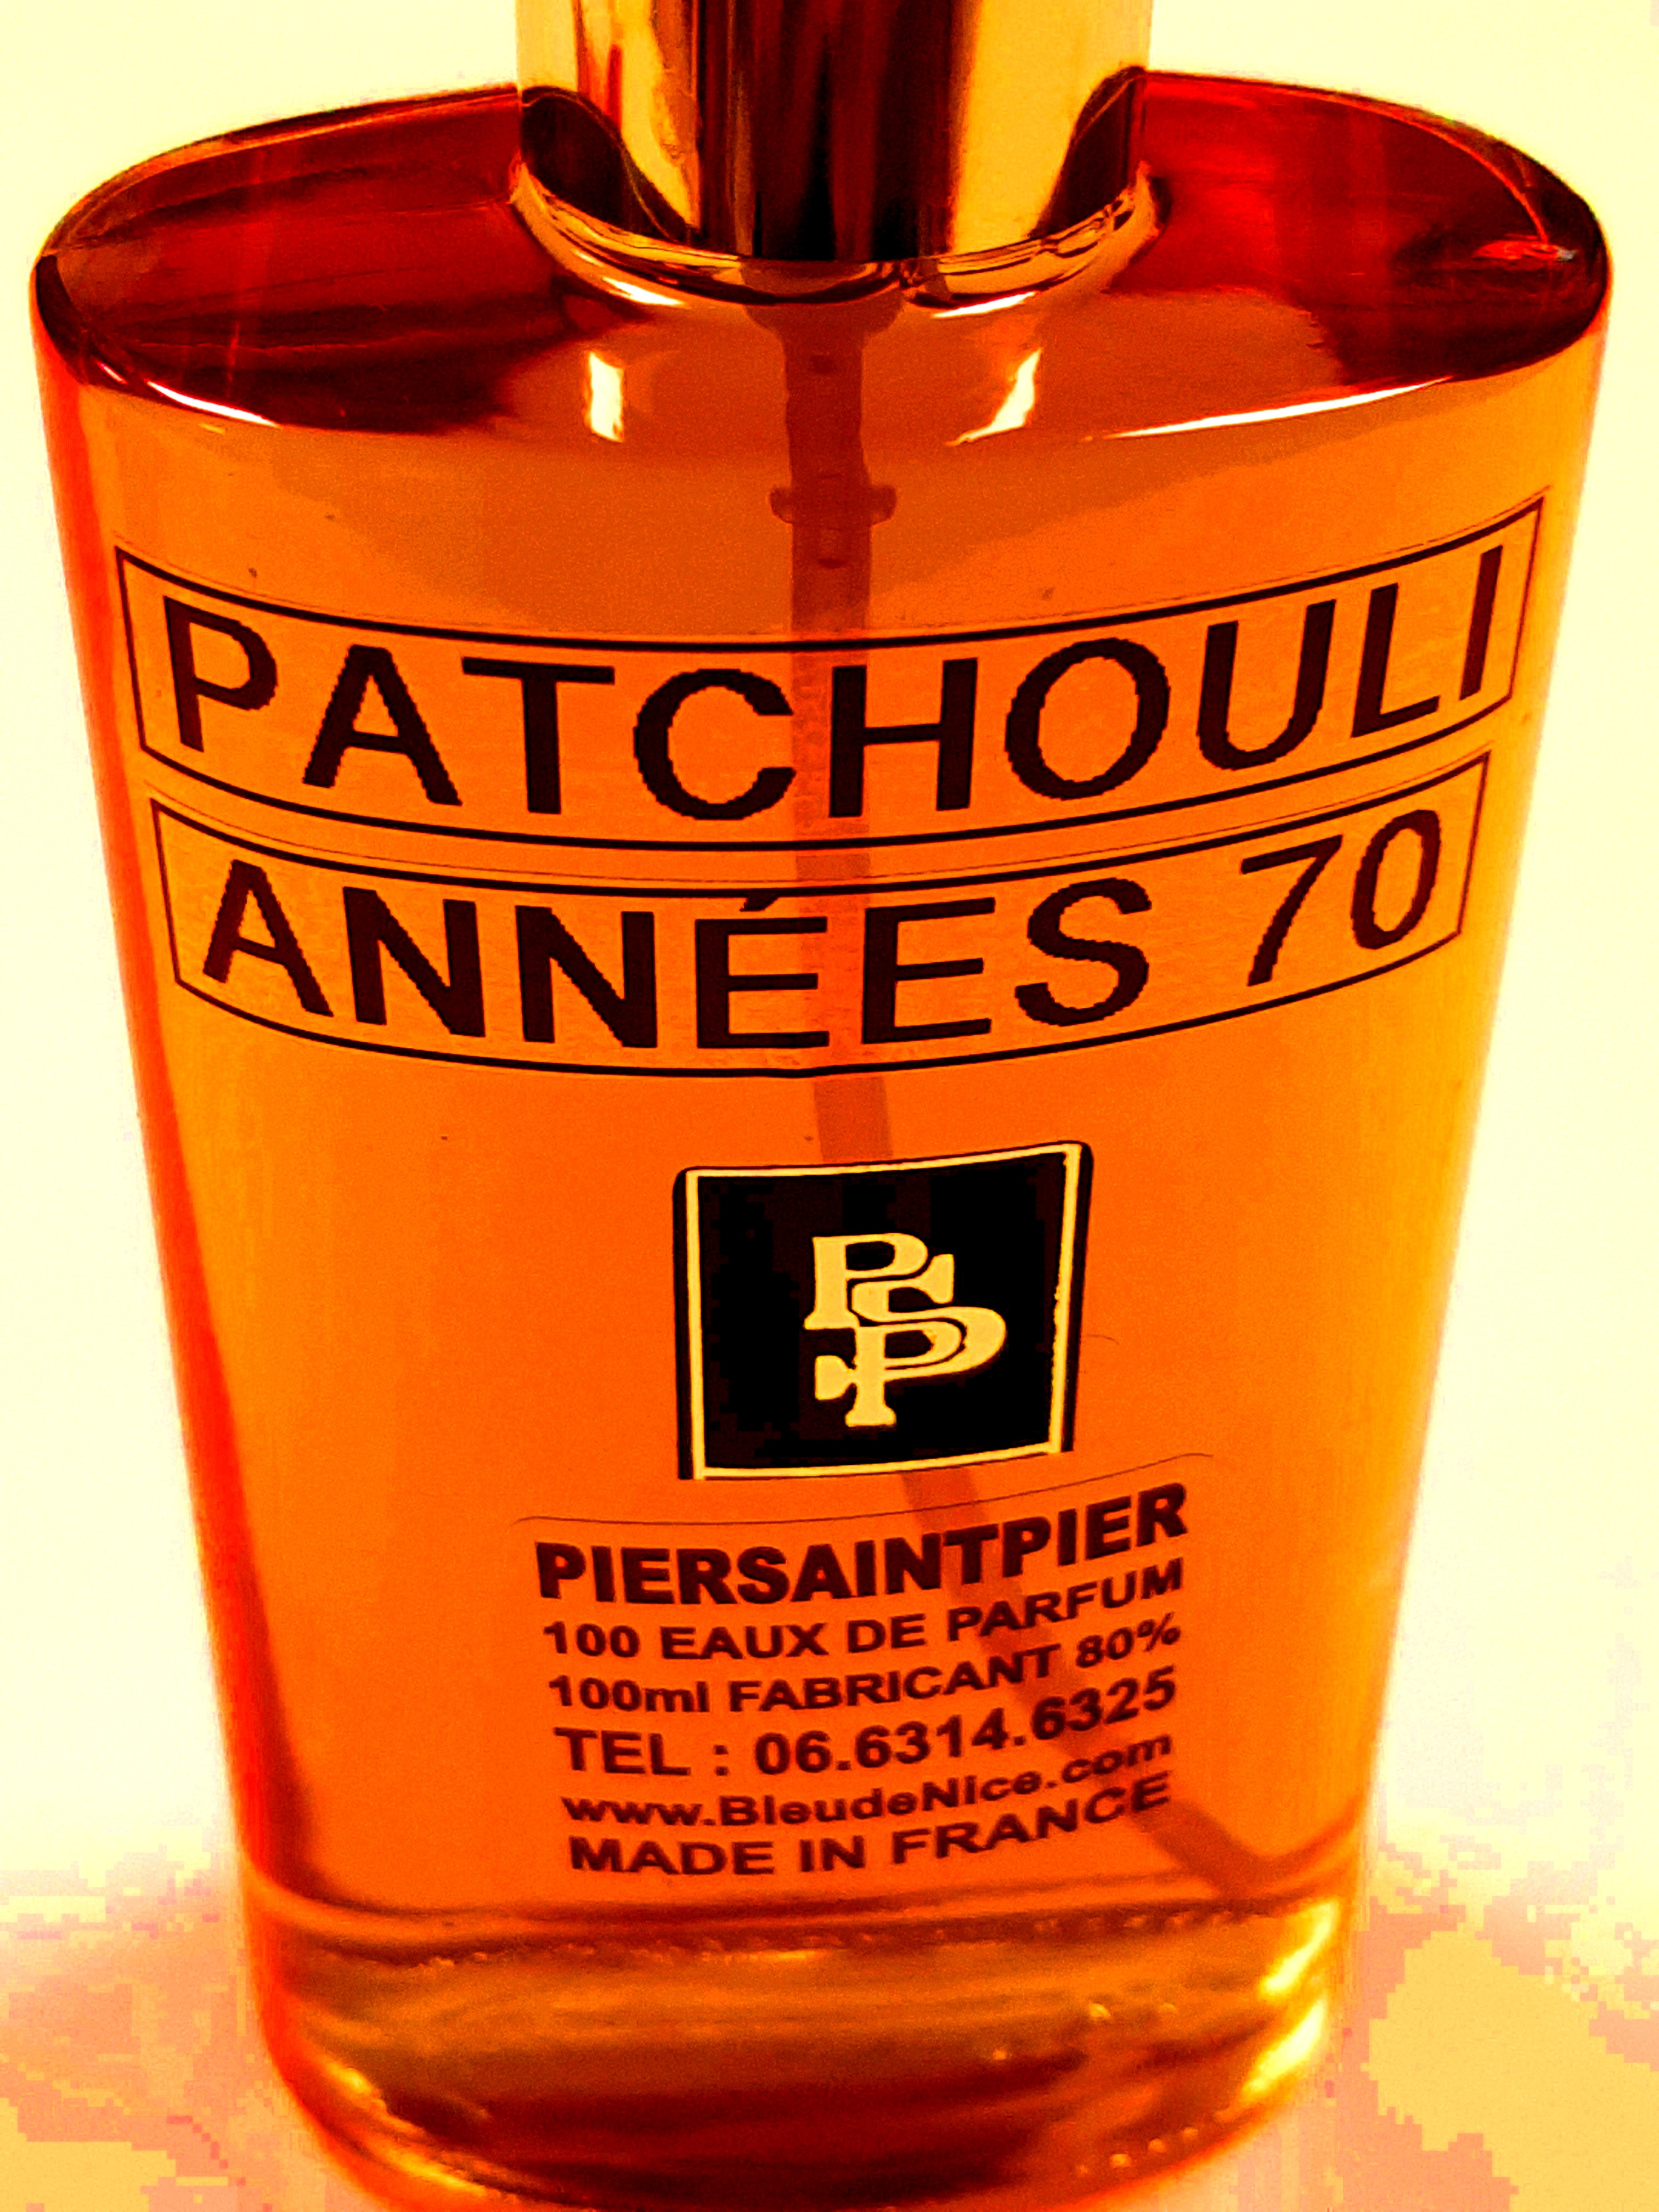 LE VRAI PATCHOULI 60-70 le parfum préféré de l'herboriste